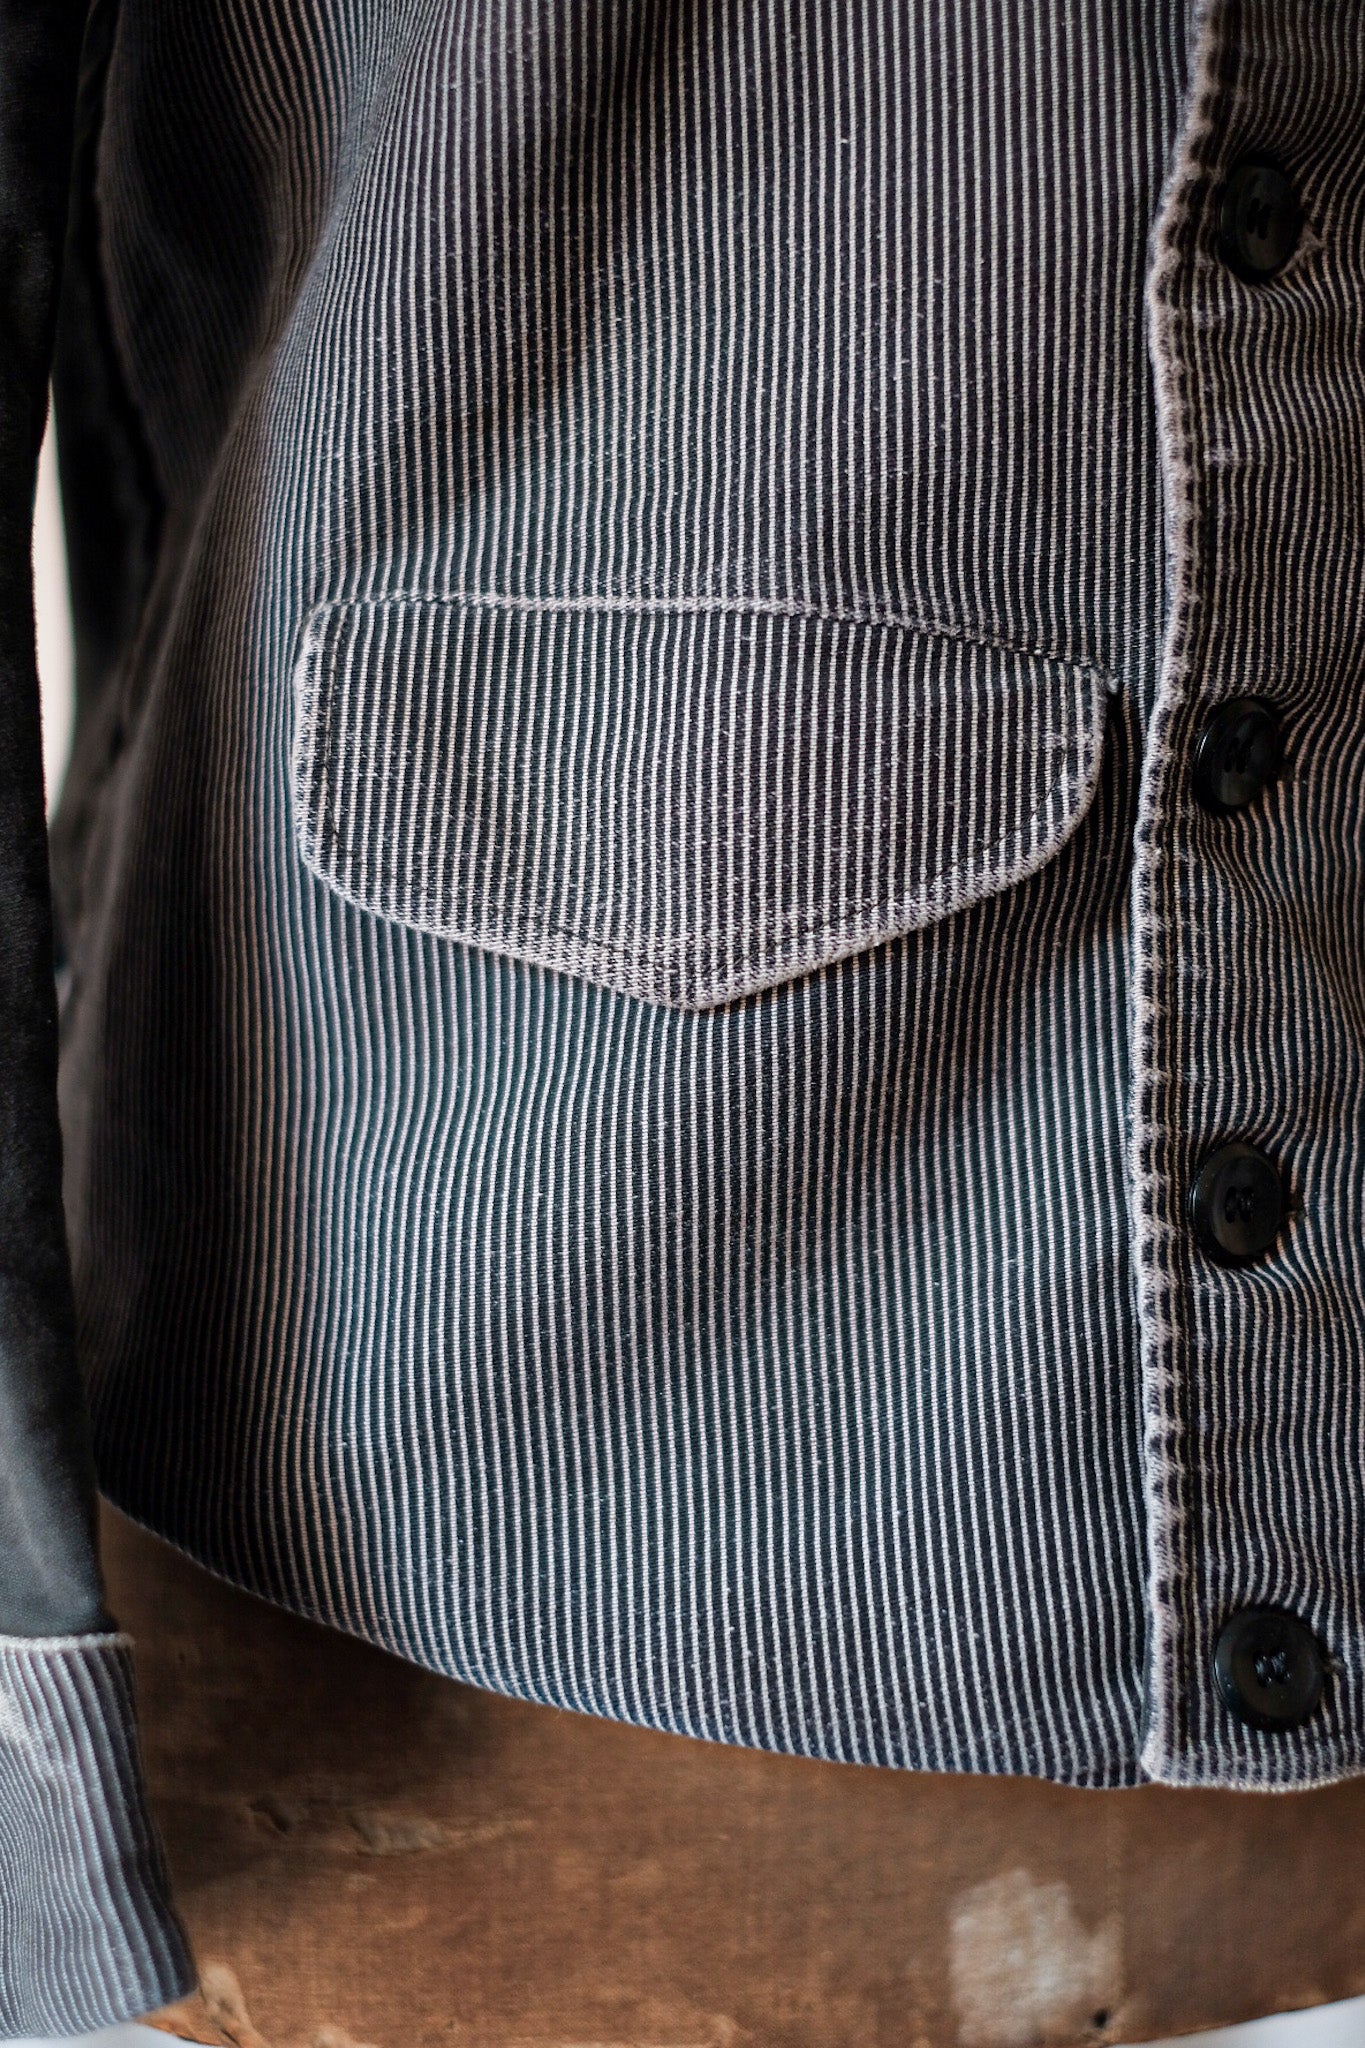 【~50's】Belgium Vintage Printed Moleskin Double Breasted Work Jacket